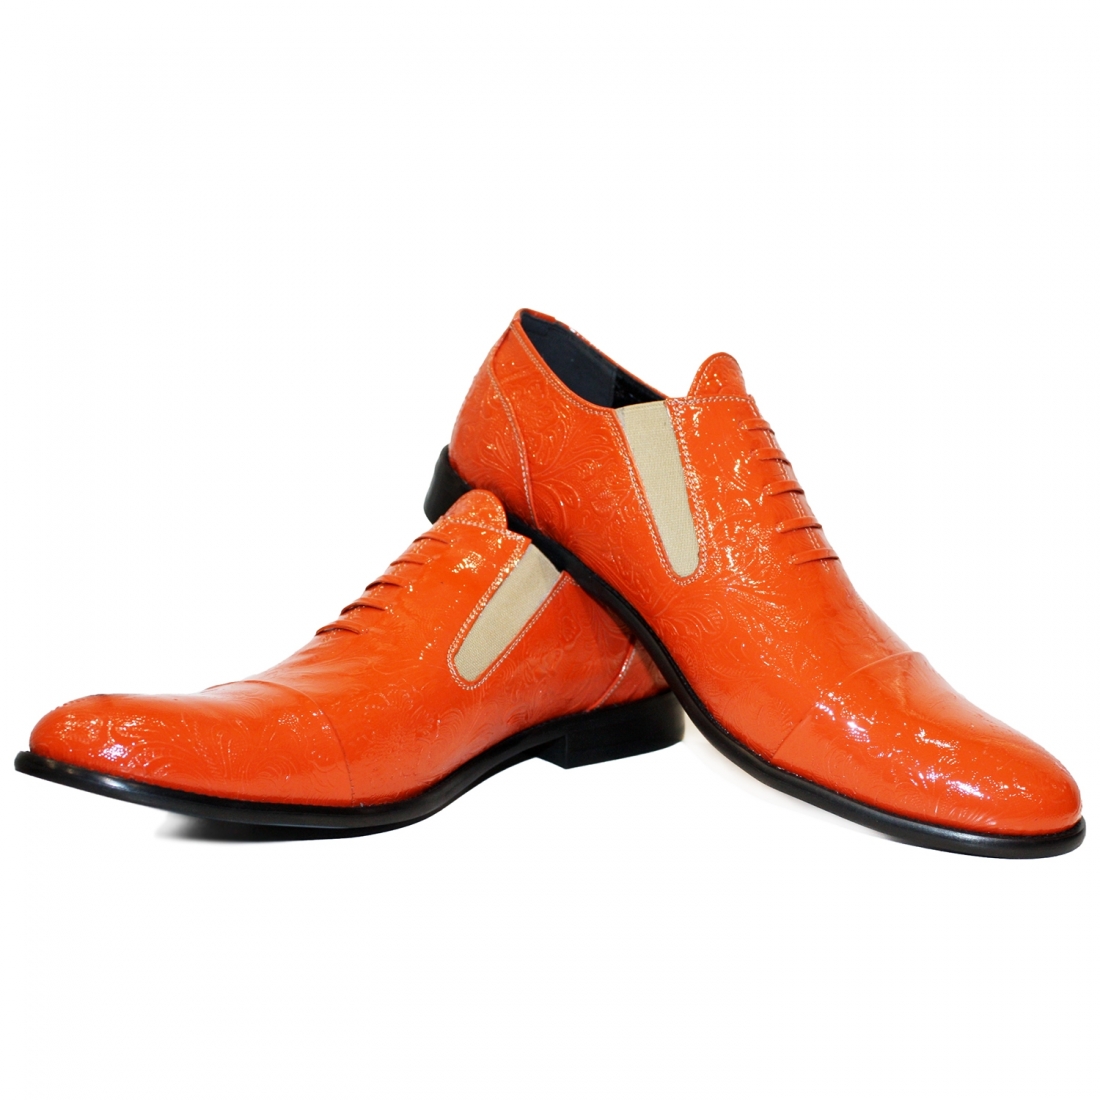 Modello Aranccio - Slipper - Handmade Colorful Italian Leather Shoes